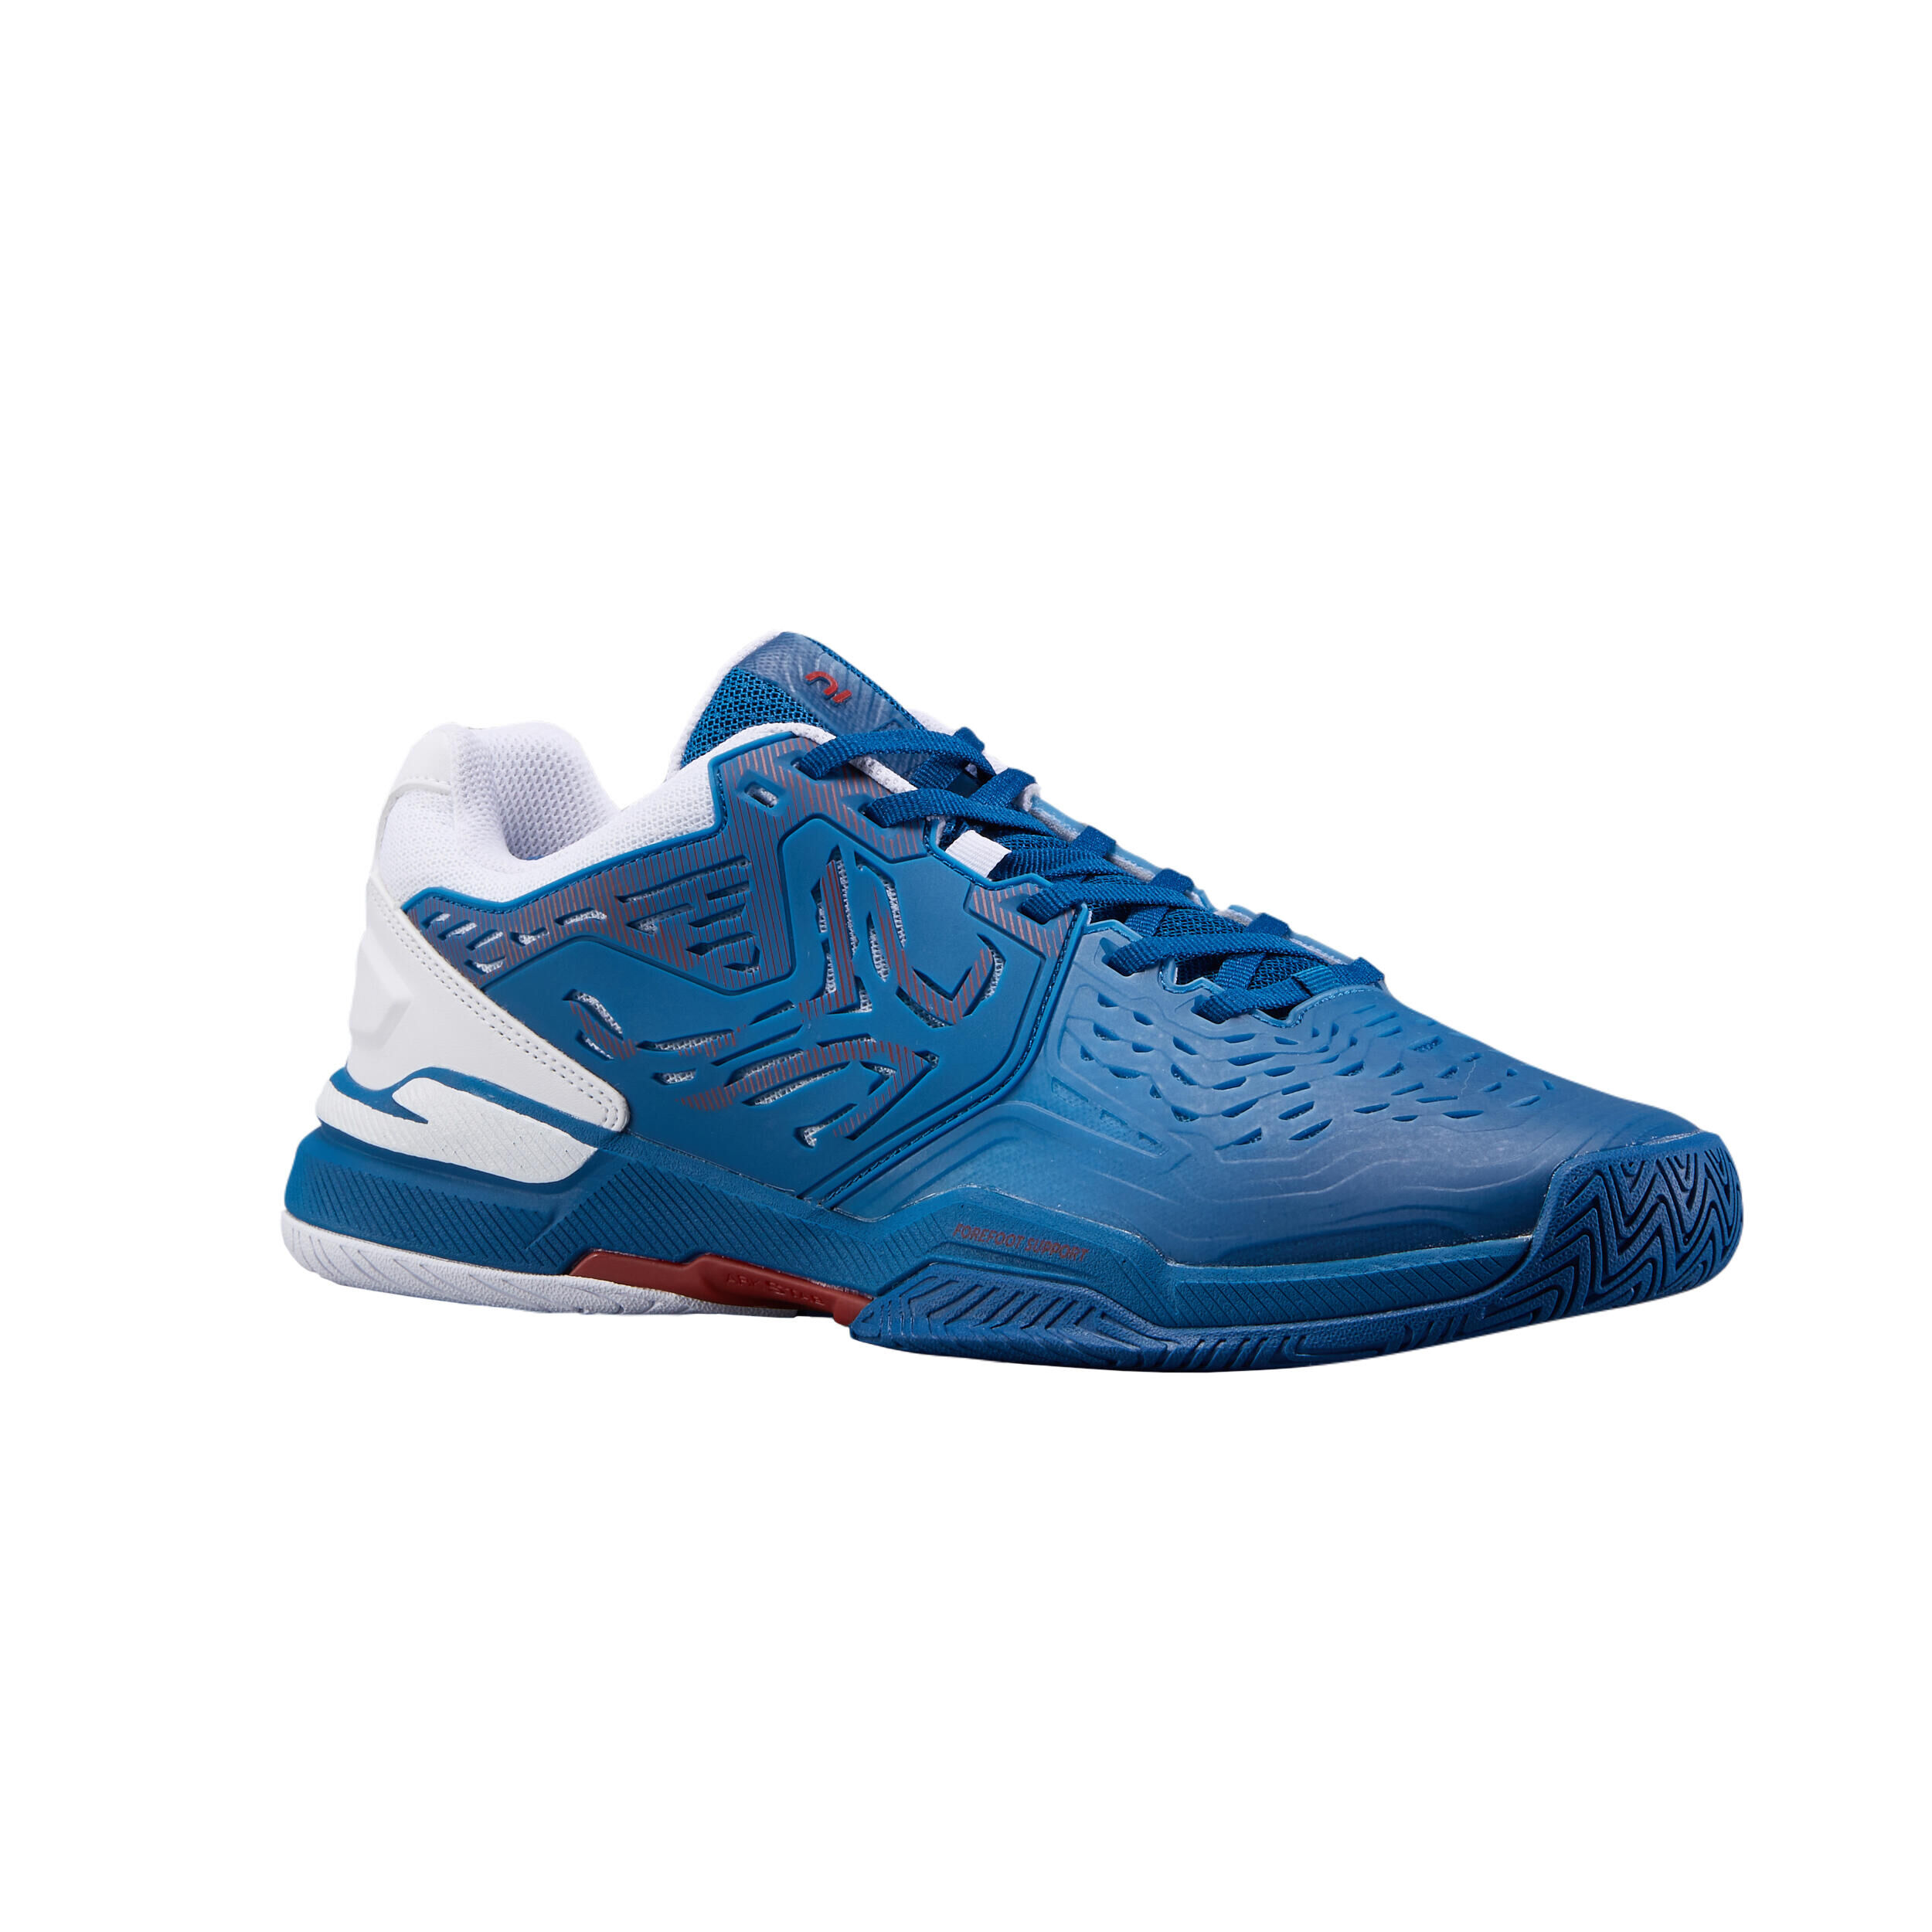 ARTENGO Men's Multi-Court Tennis Shoes TS560 - Blue